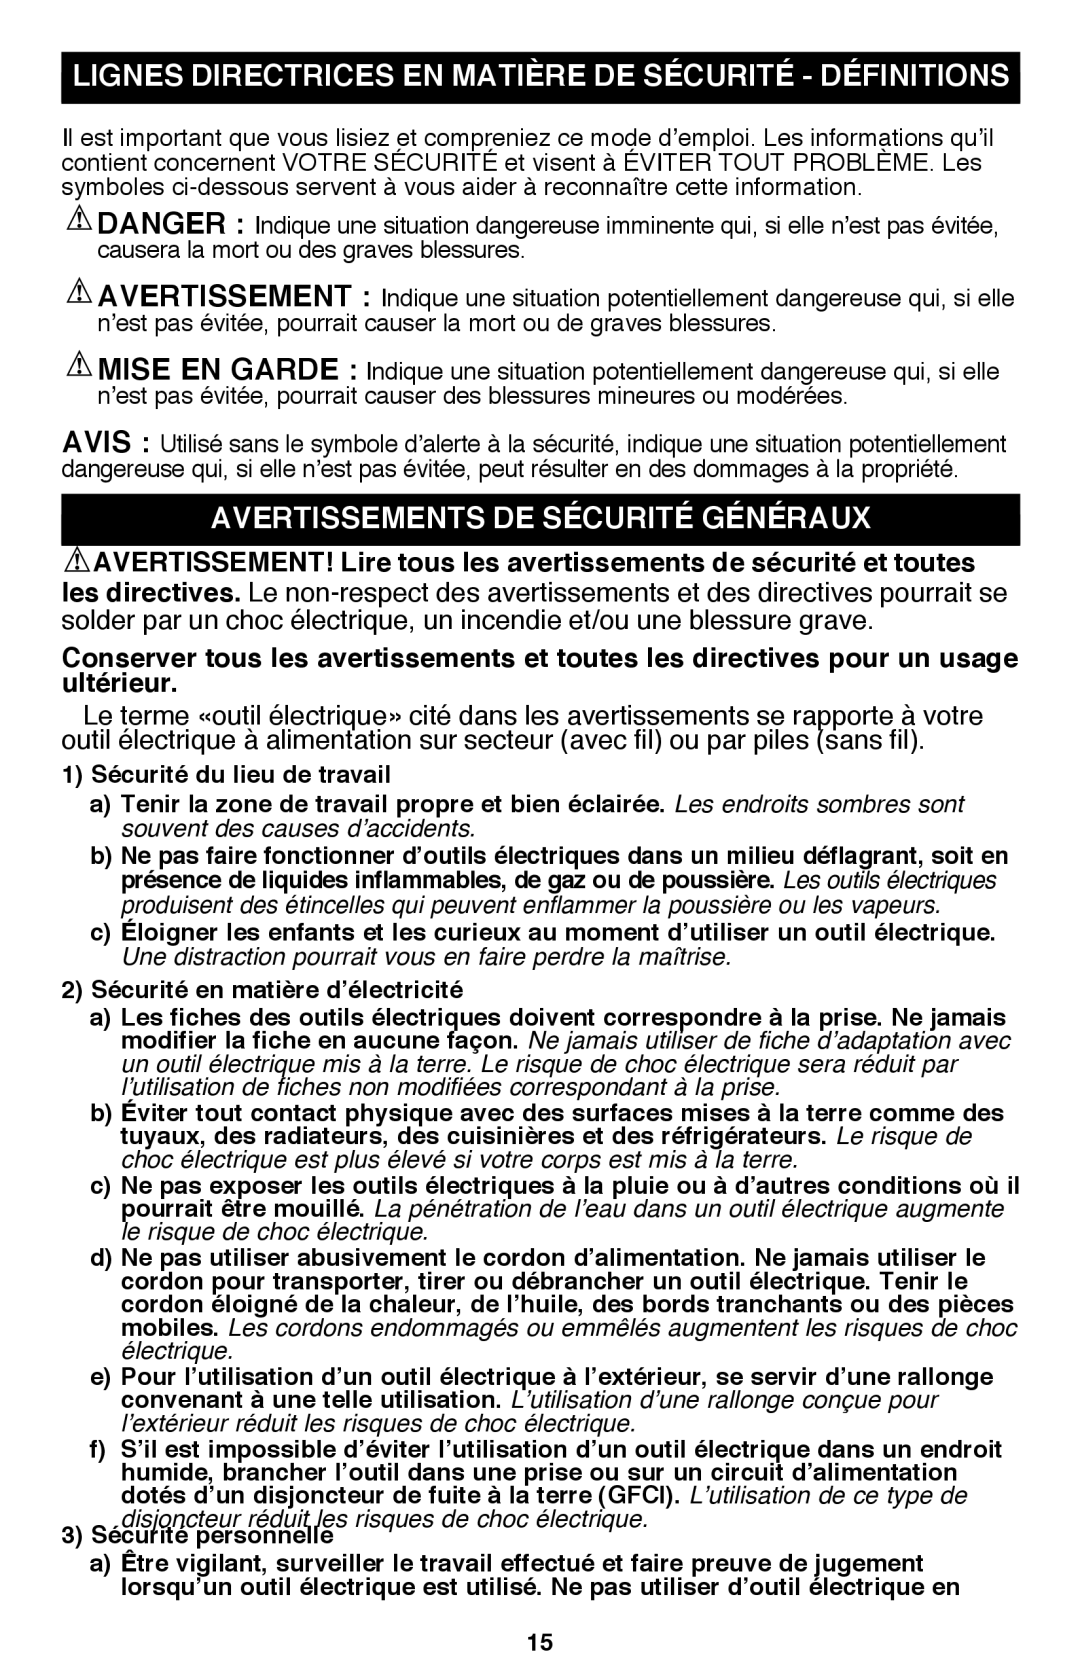 Black & Decker PSL12 Lignes Directrices En Matière De Sécurité - Définitions, Avertissements de sécurité généraux 